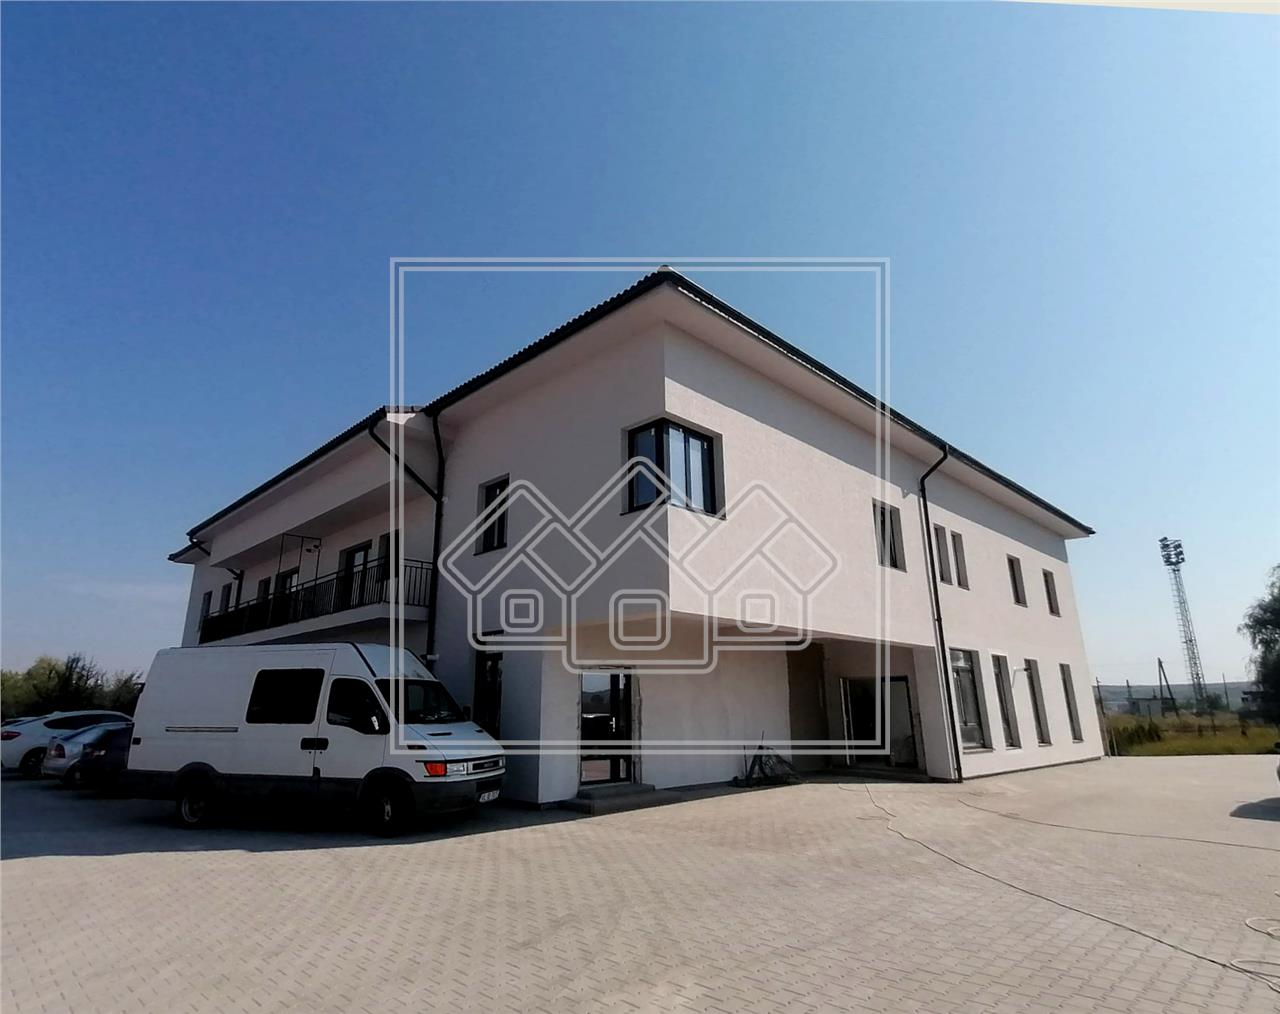 Wohnung zum Verkauf in Sibiu - Selimbar -schicke Villa - 2 Zimmer